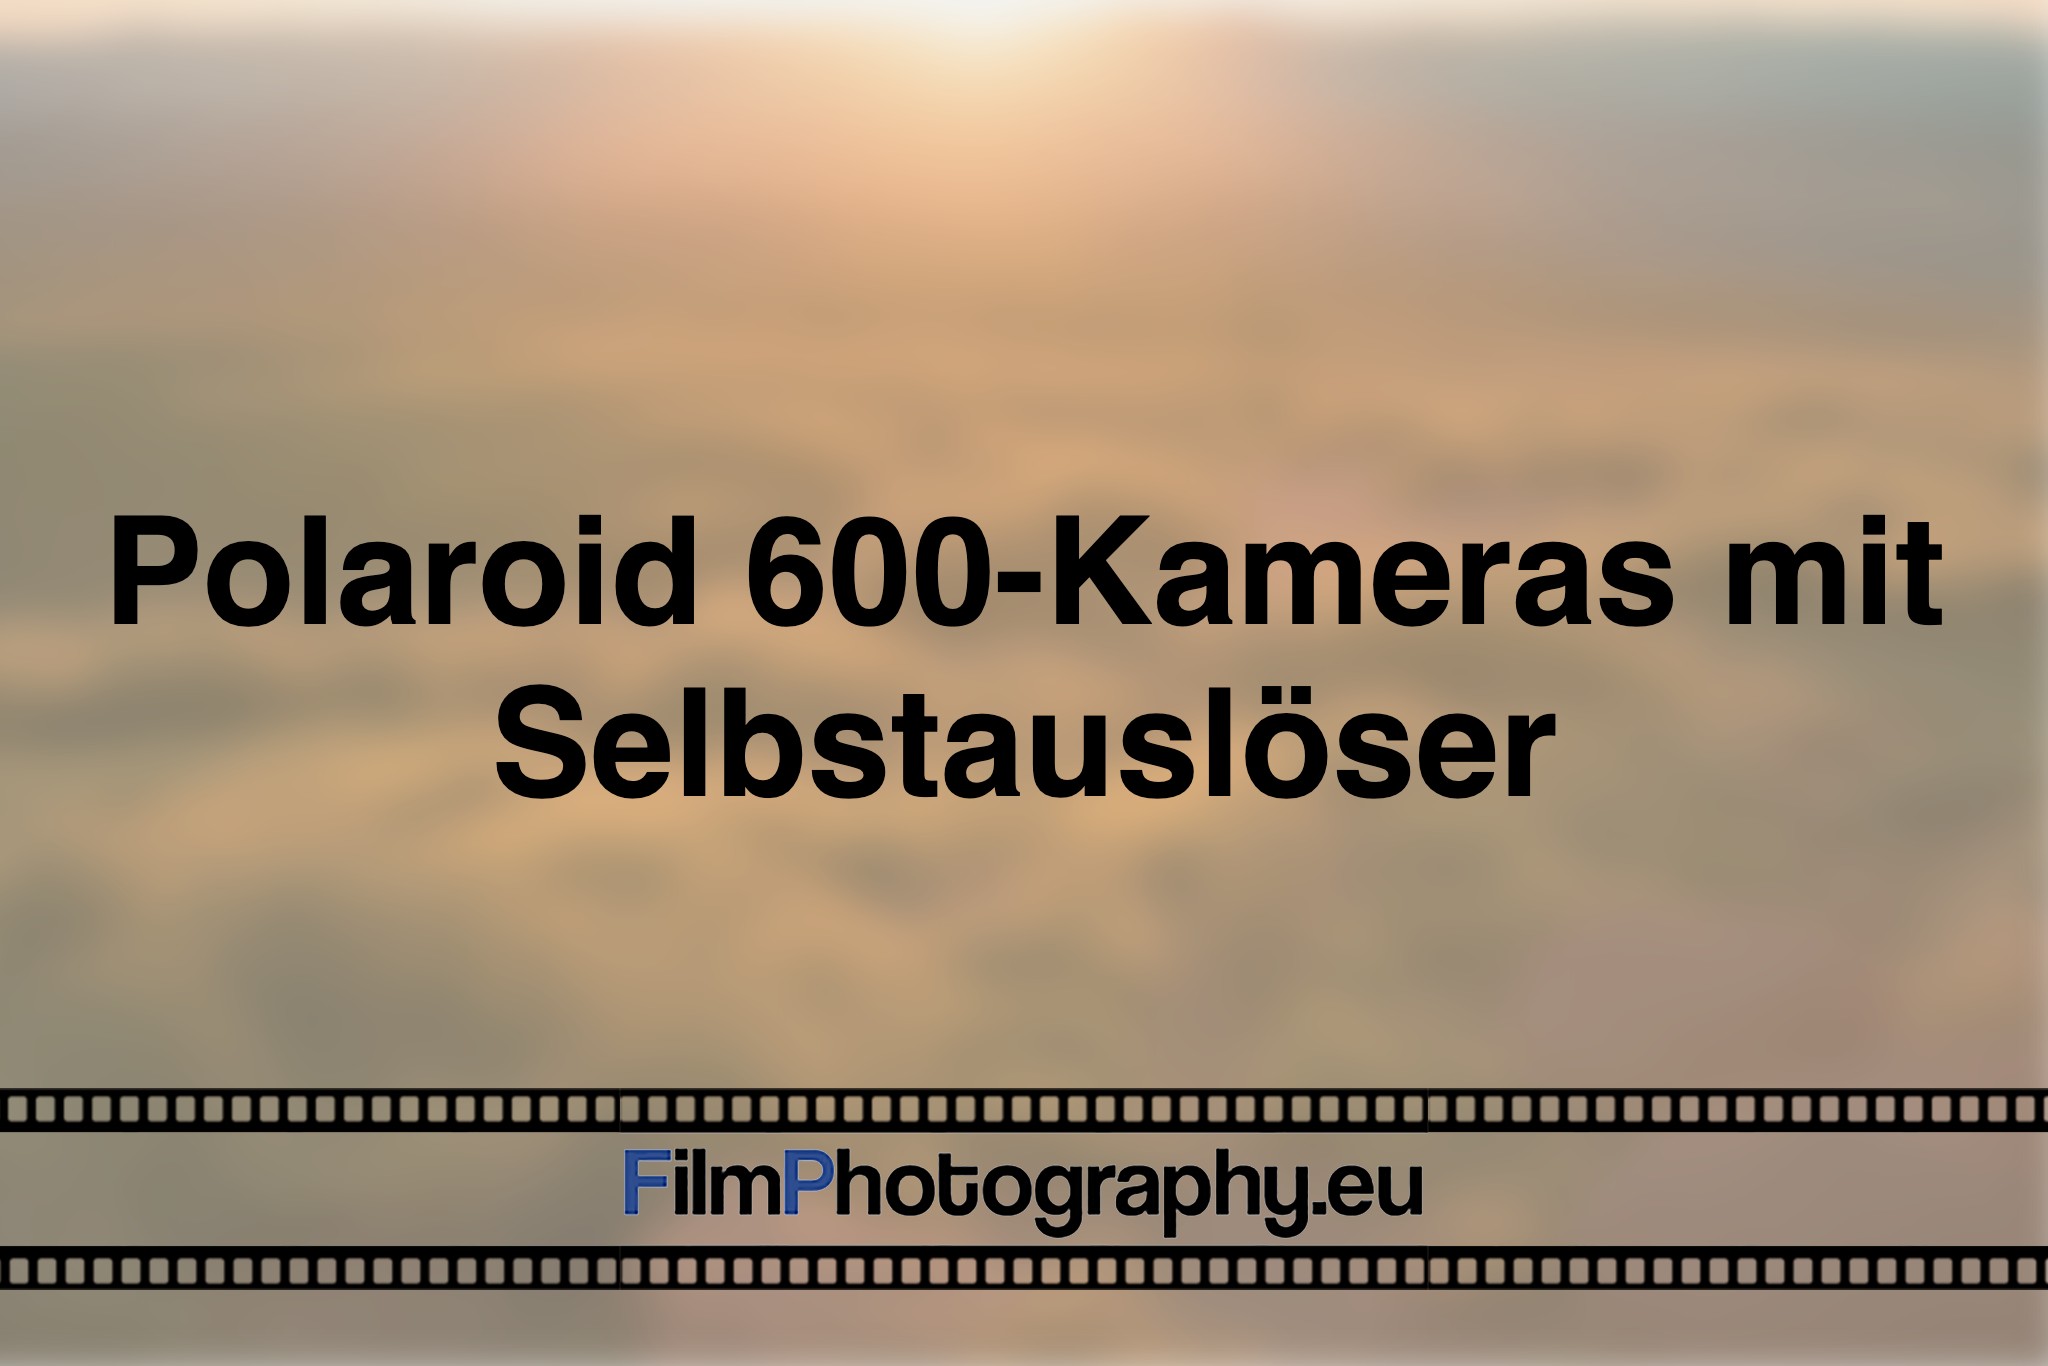 polaroid-600-kameras-mit-selbstausloeser-photo-bnv